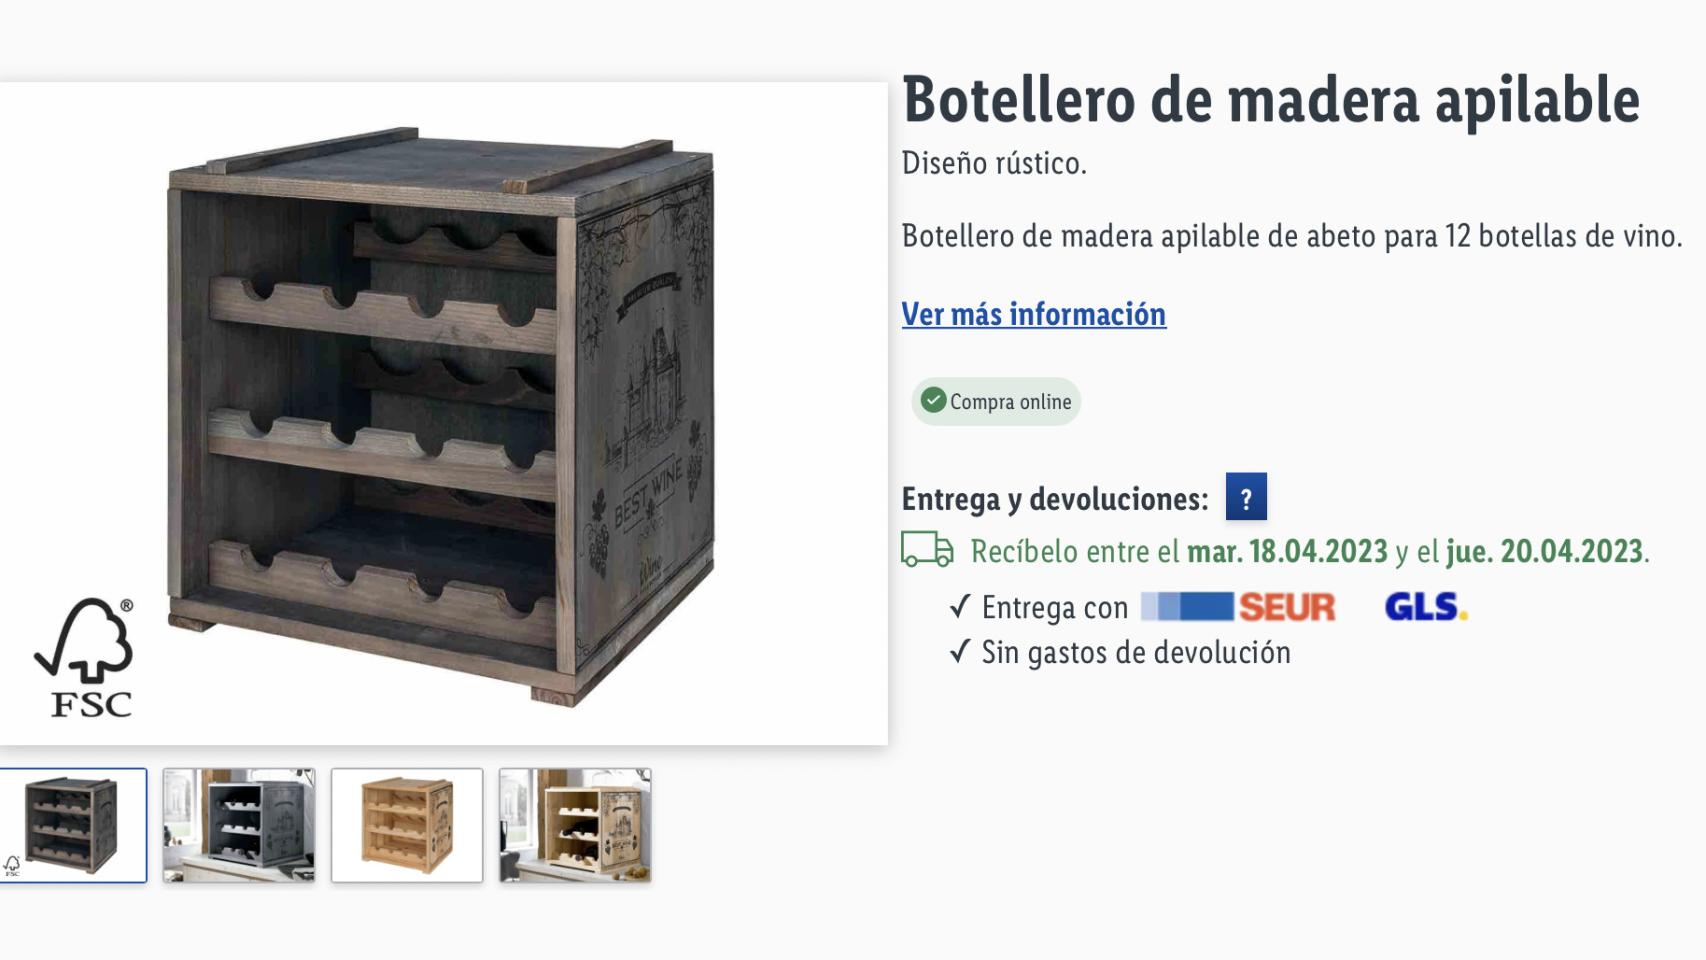 El nuevo botellero de Lidl con capacidad para 12 botellas de vino tirado de  precio: cuesta 27,99 euros